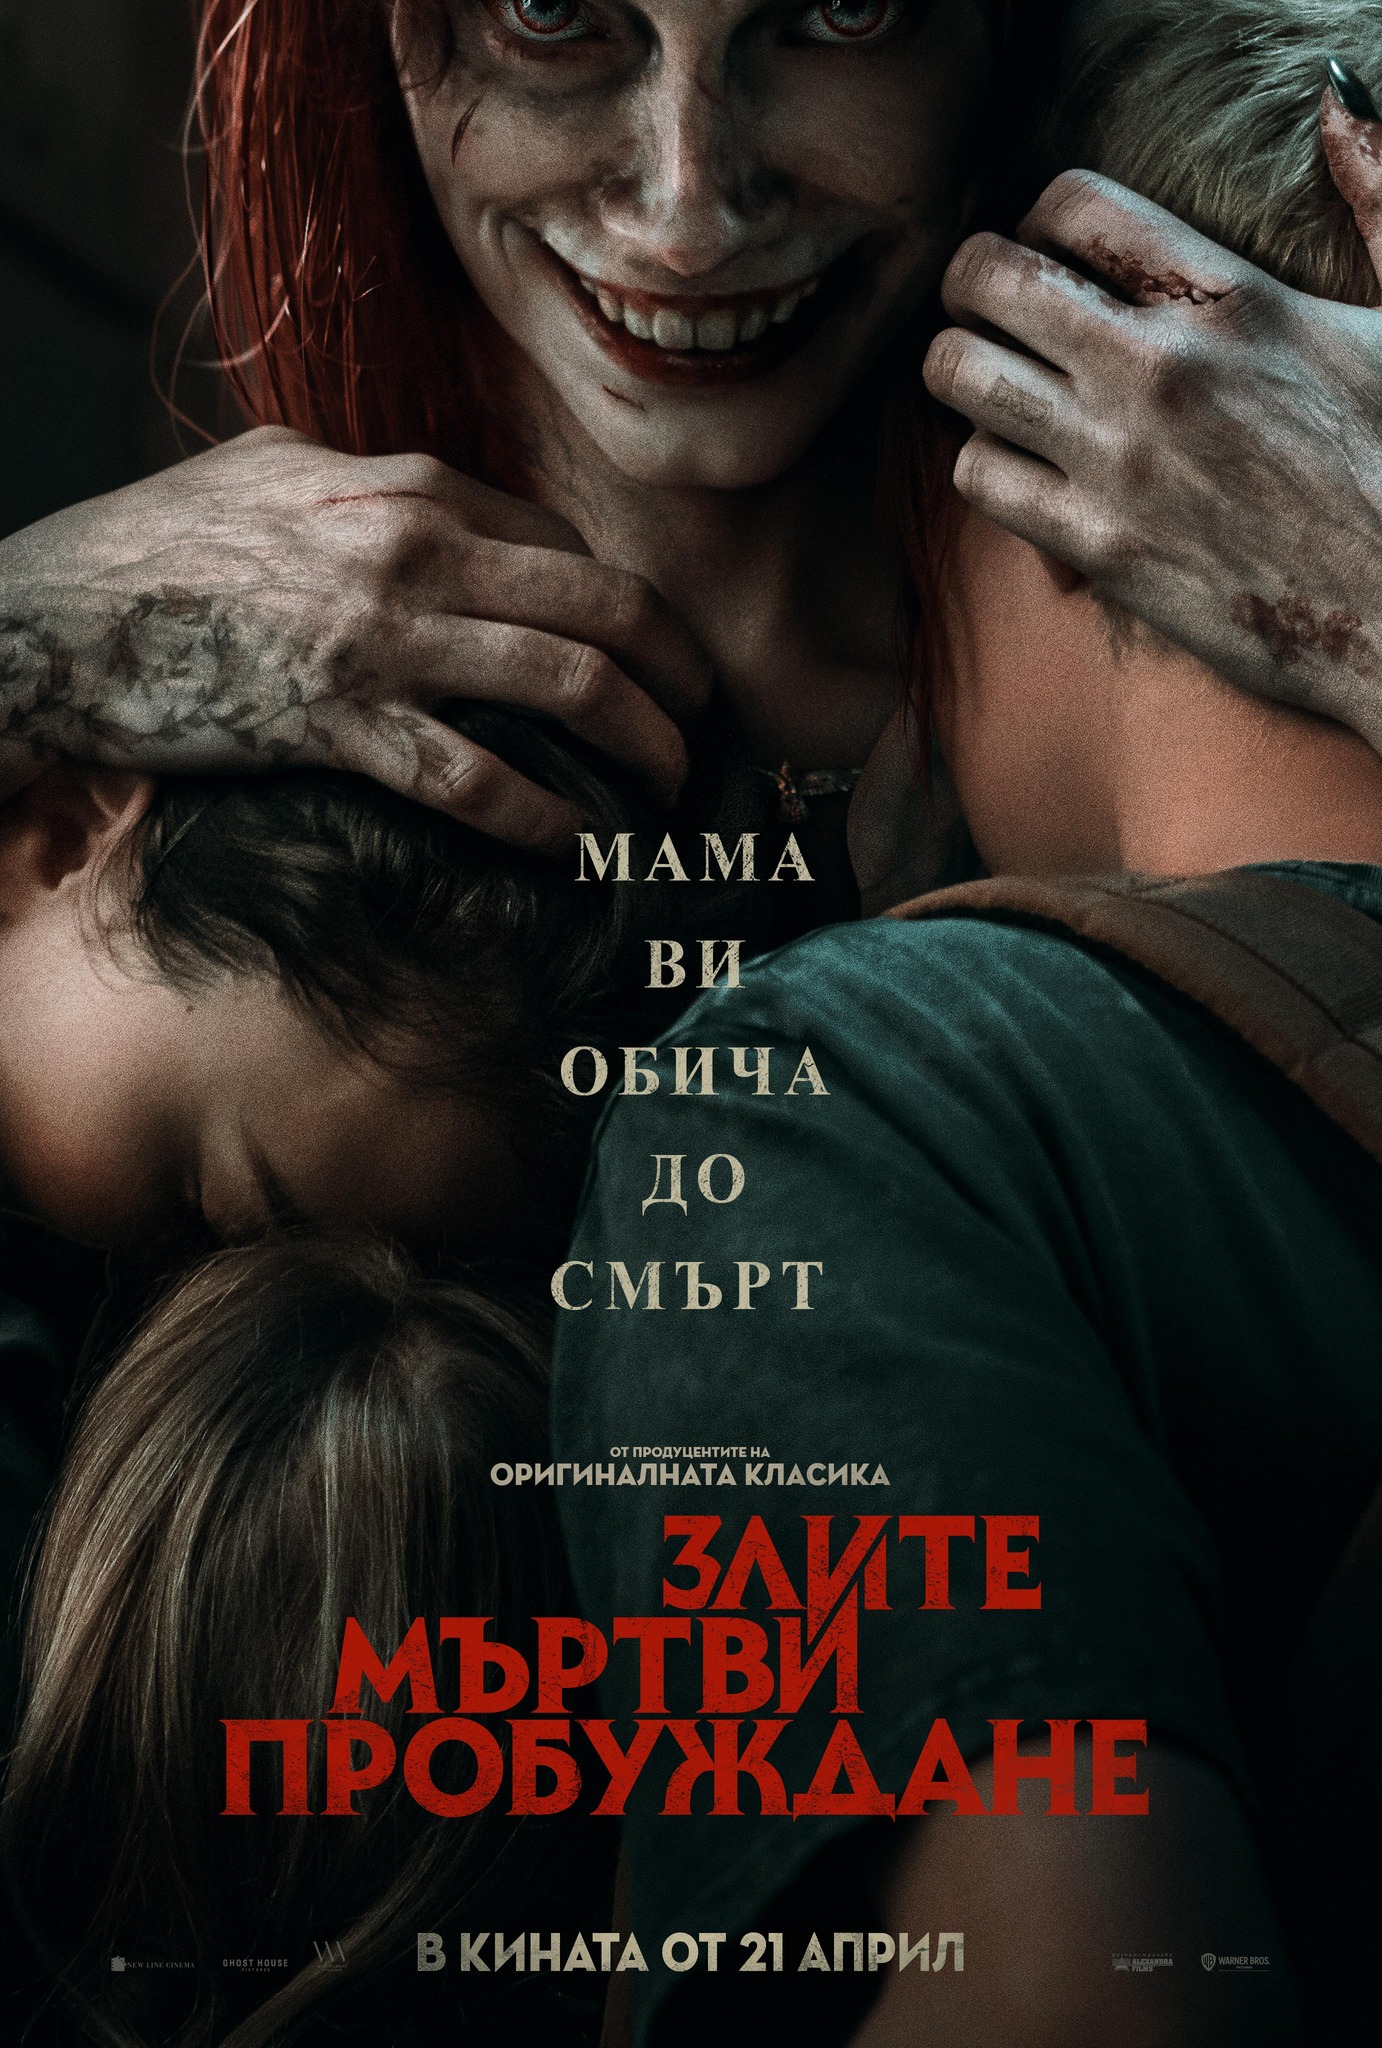 Български плакат "Злите мъртви: Пробуждане"